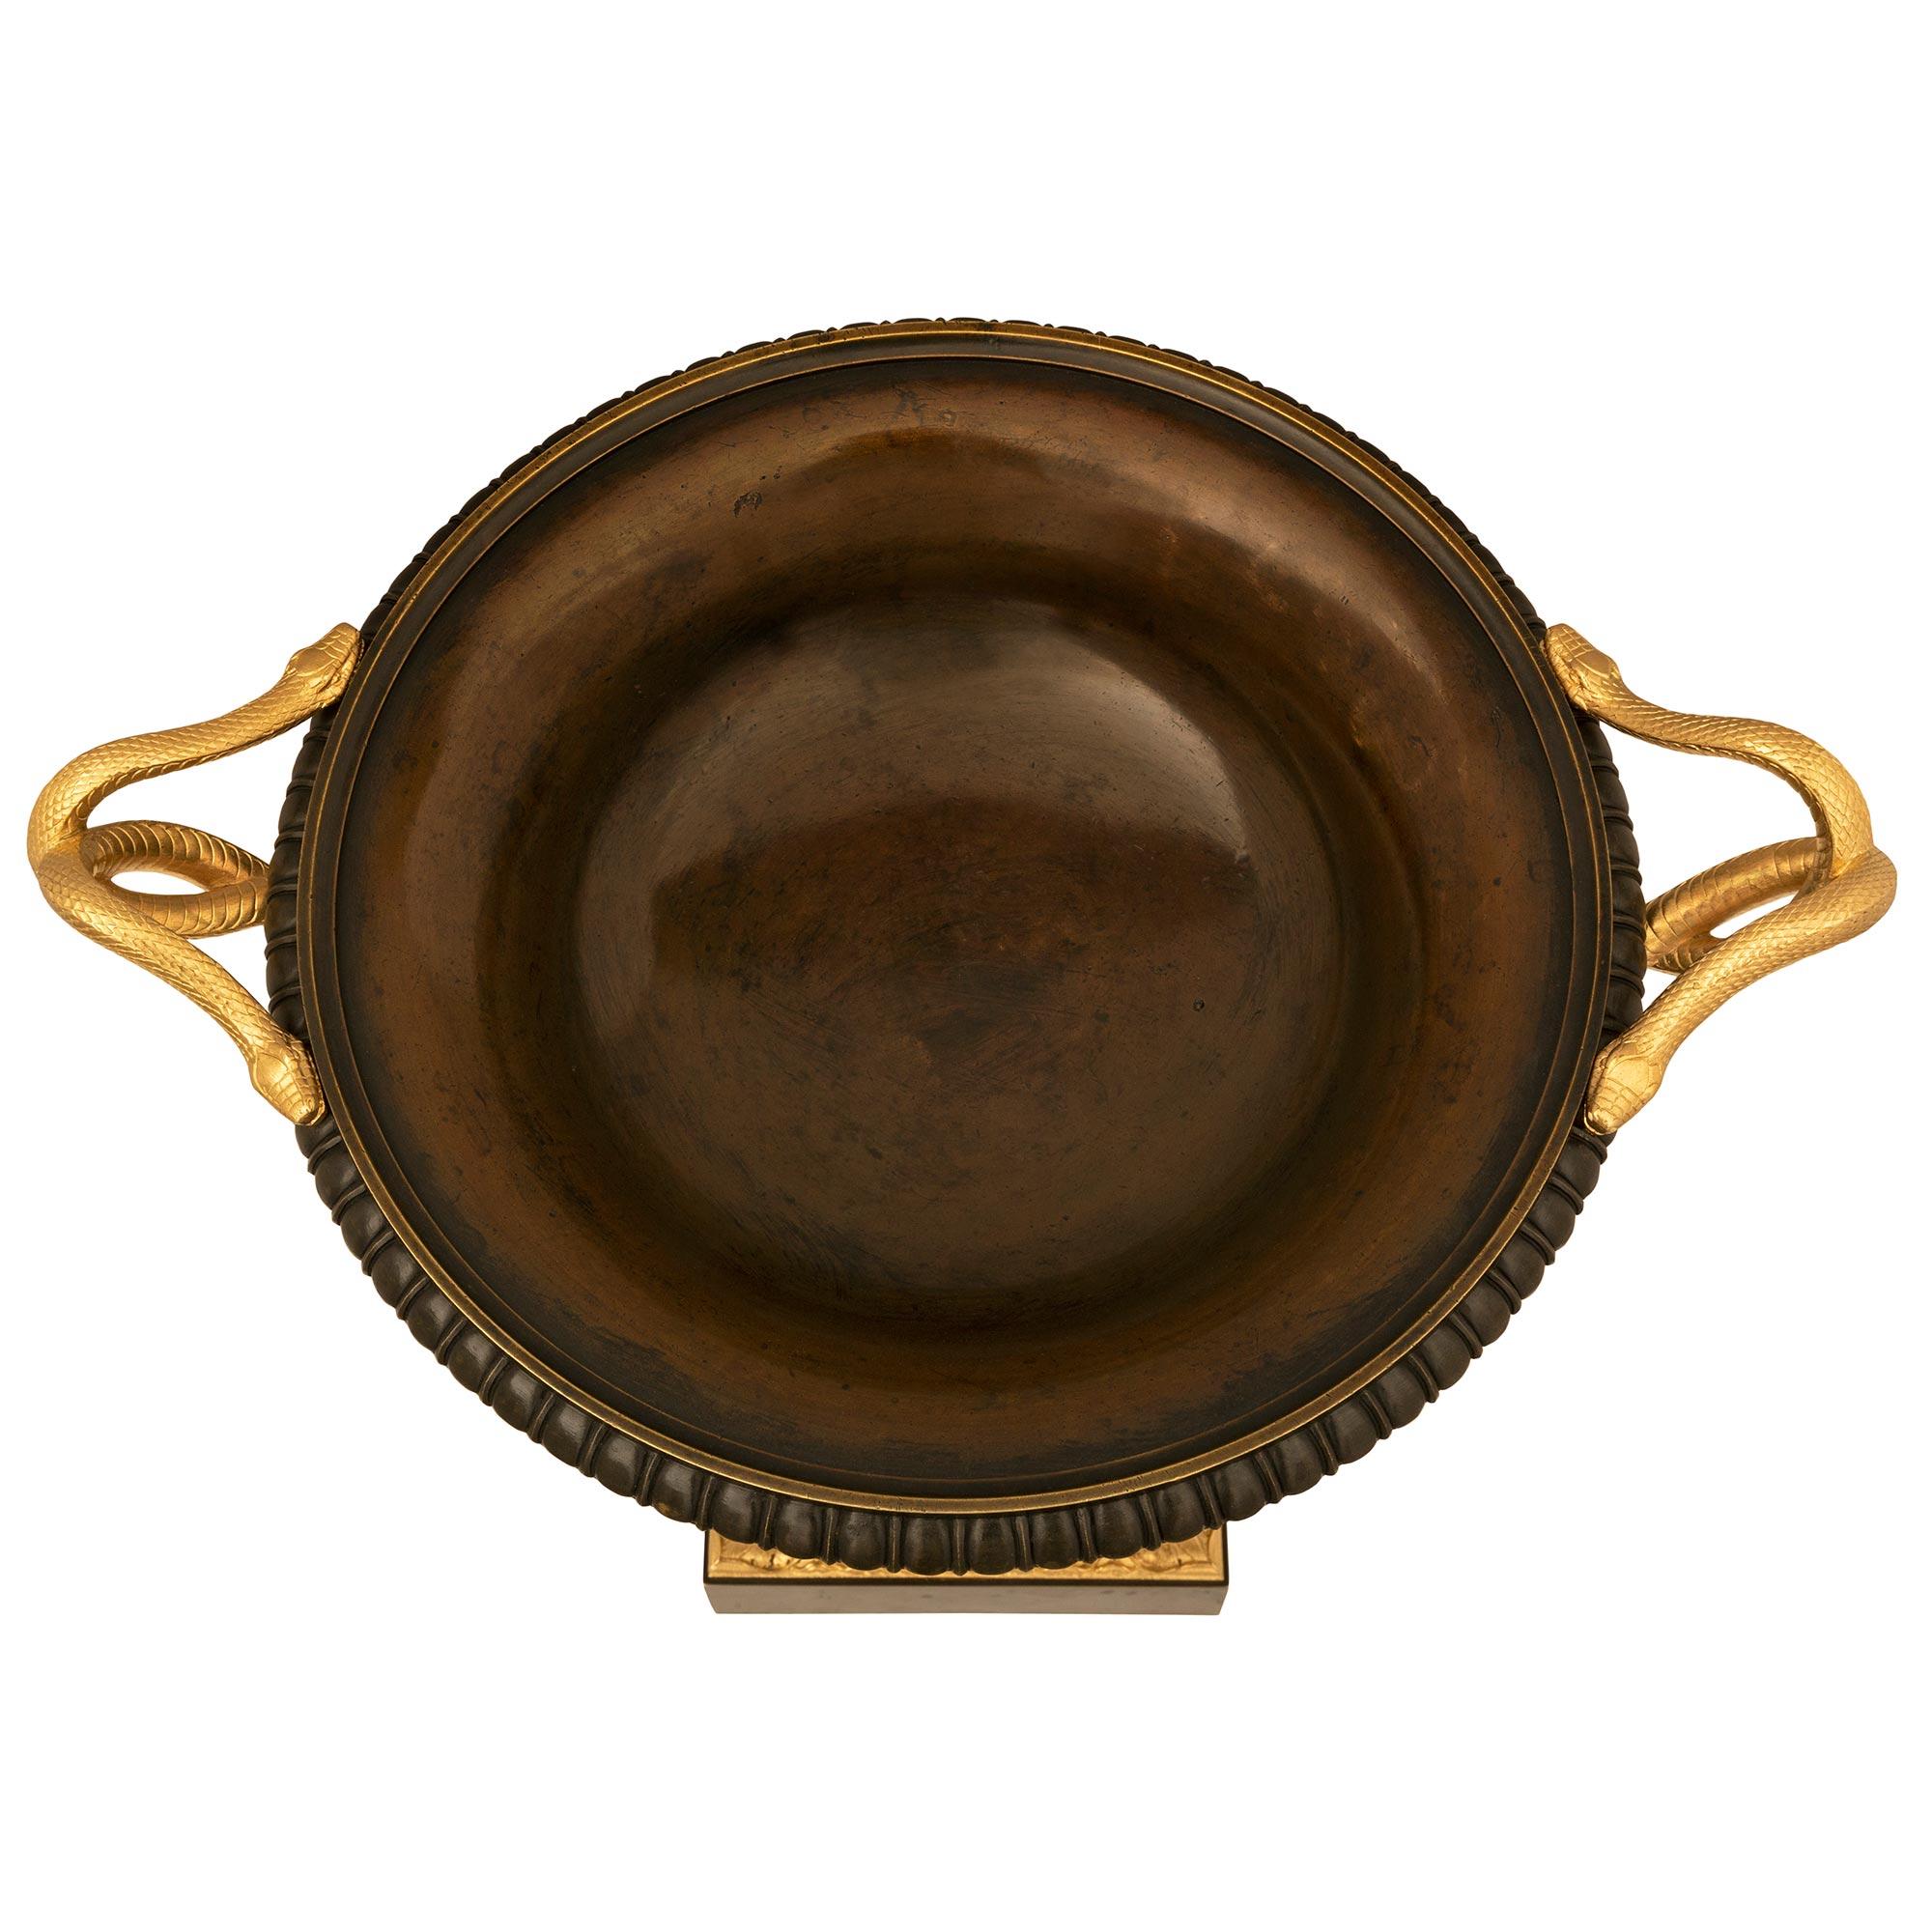 Remarquable tazza en bronze patiné et bronze doré de très haute qualité, de style néoclassique français du XIXe siècle. La tazza repose sur une base carrée ornée d'une belle bande de bronze doré à feuillage tacheté et de belles couronnes de laurier